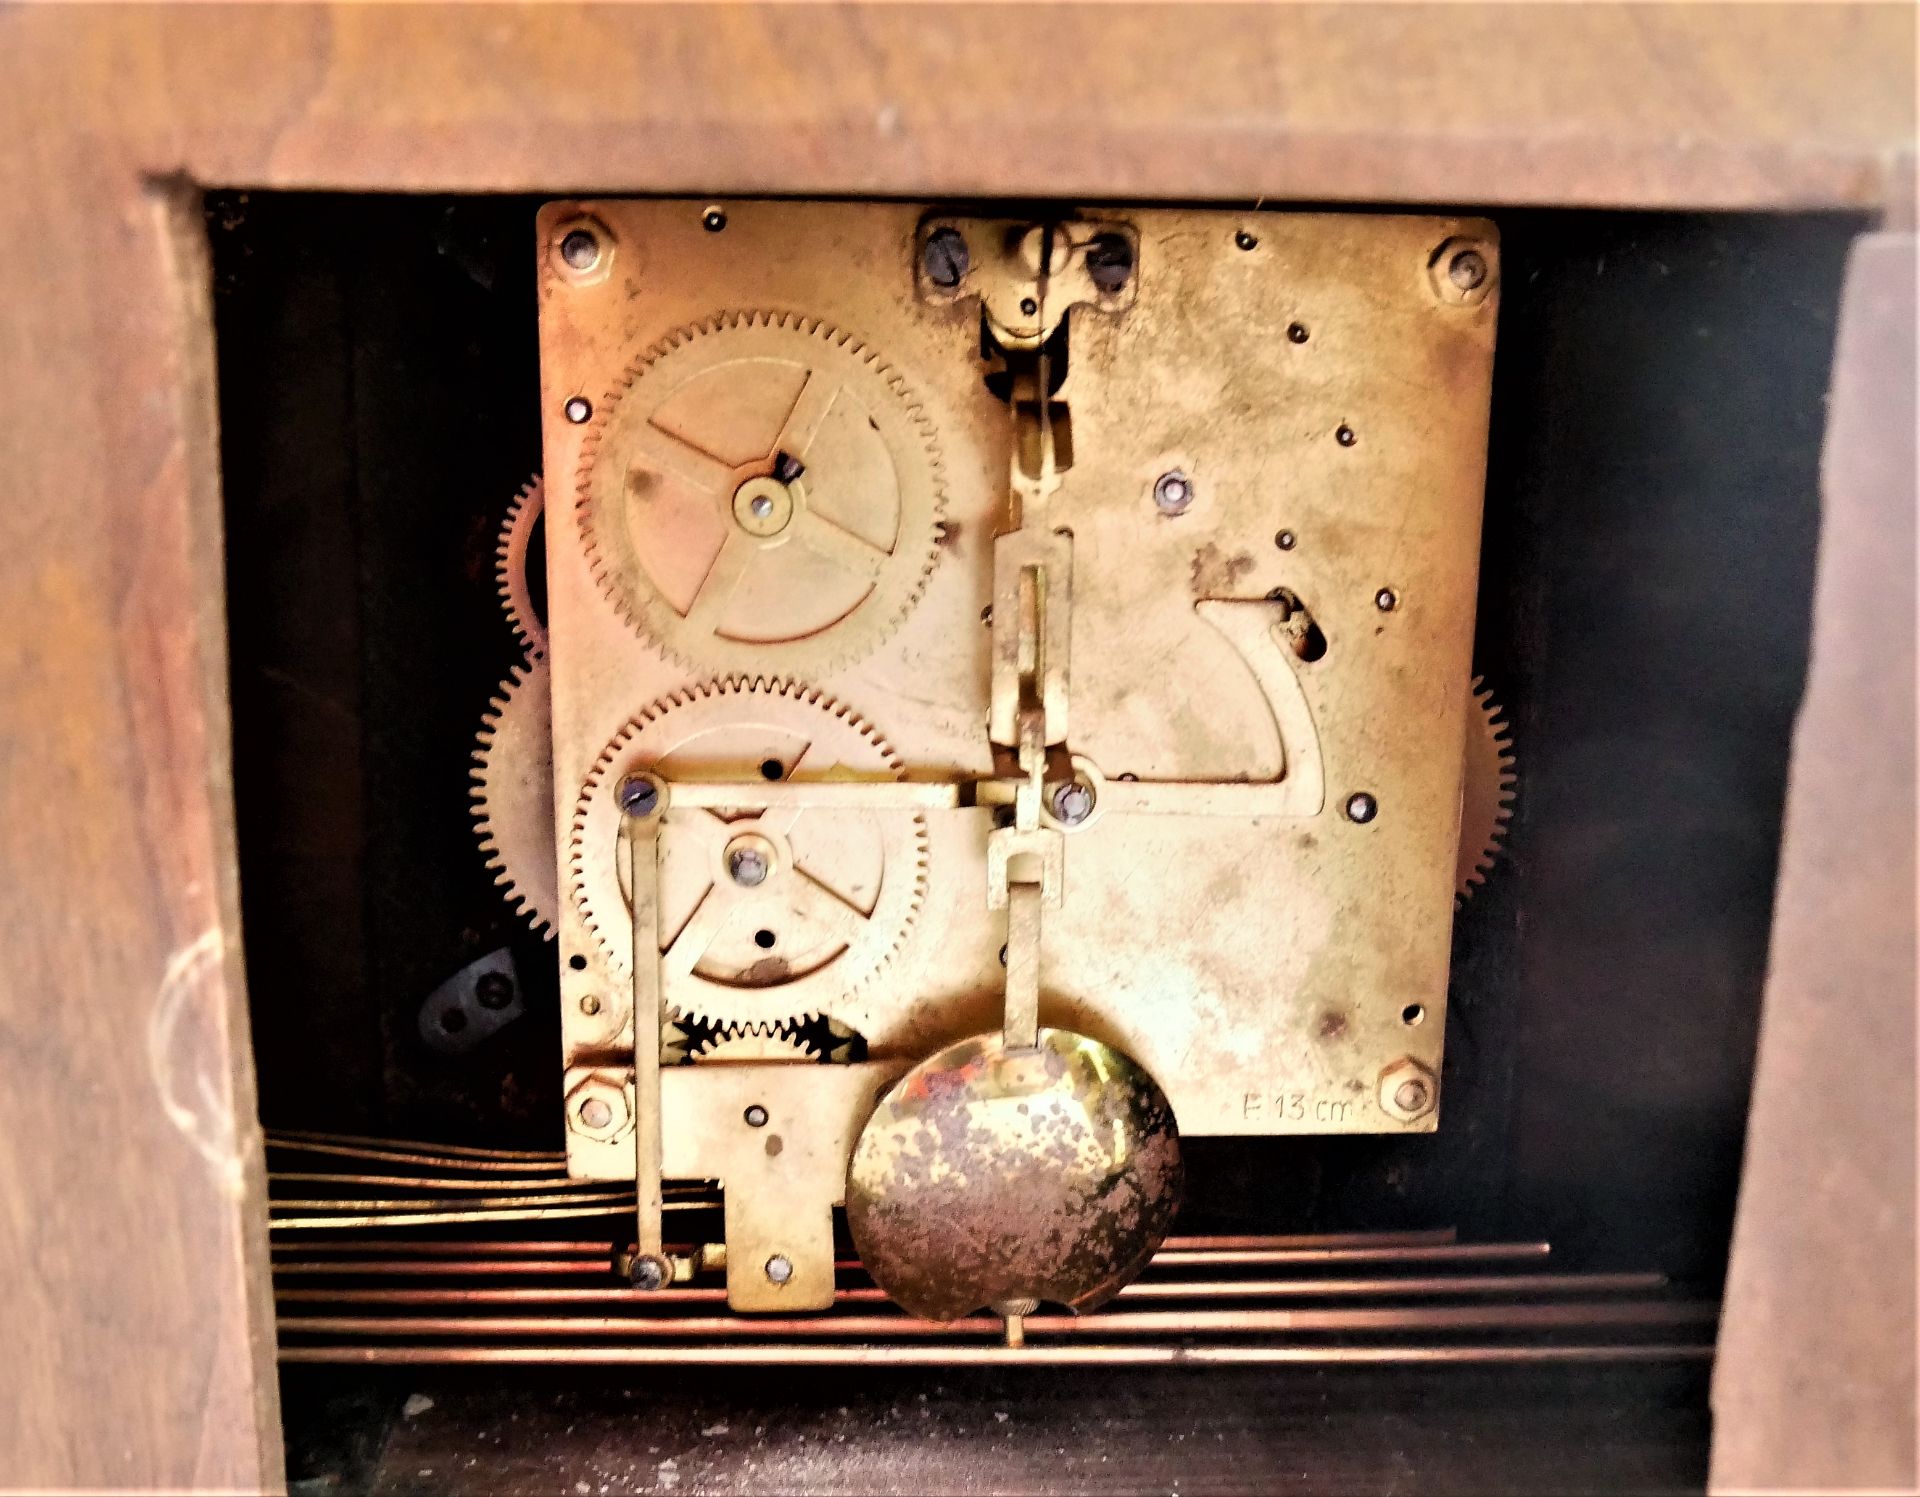 Buffet-Uhr mit Westminter-Schlag, Funktion nicht geprüft. - Image 3 of 3